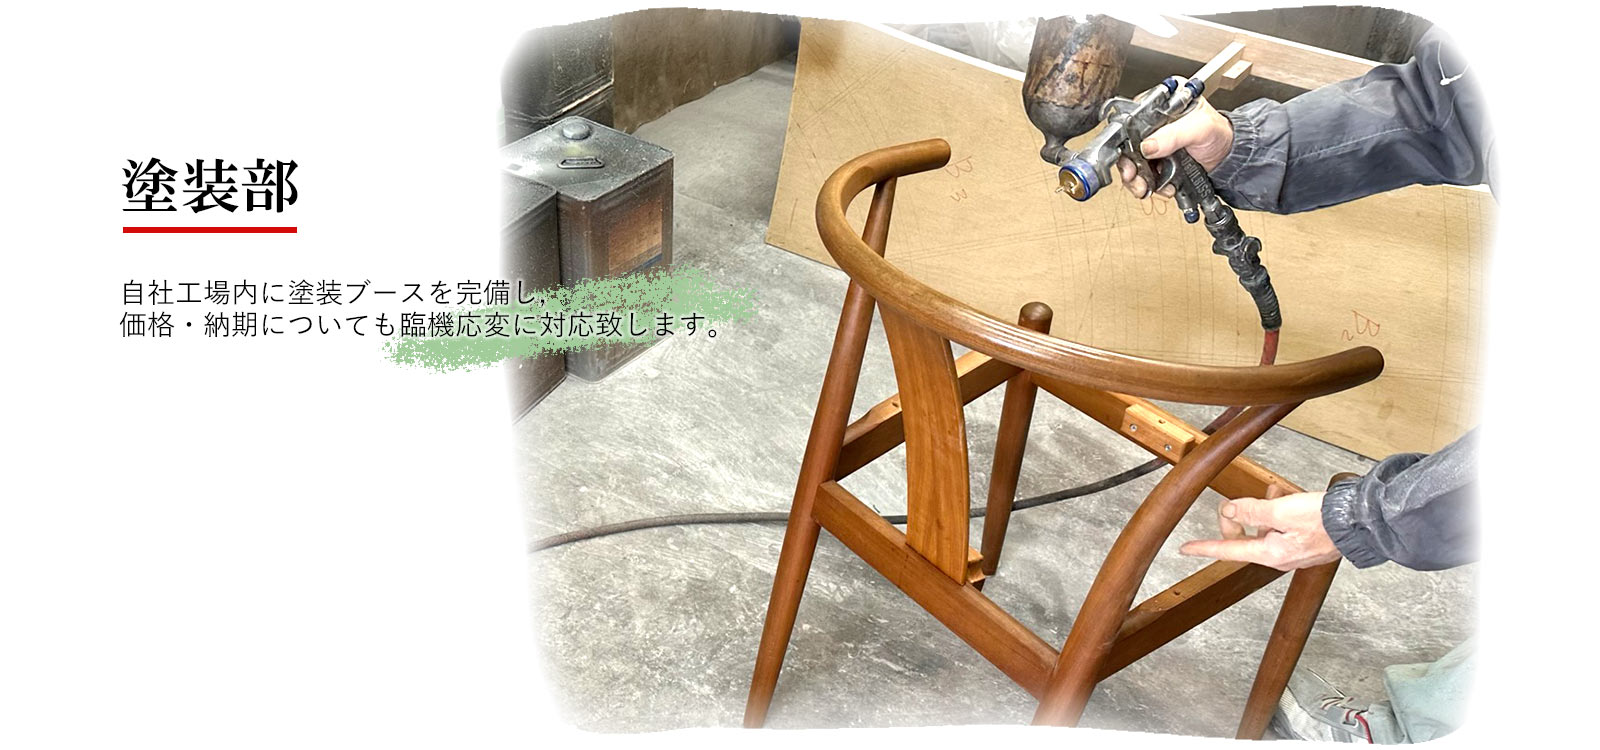 椅子・ソファーの張替え修理「イマトク工芸」埼玉県所沢市